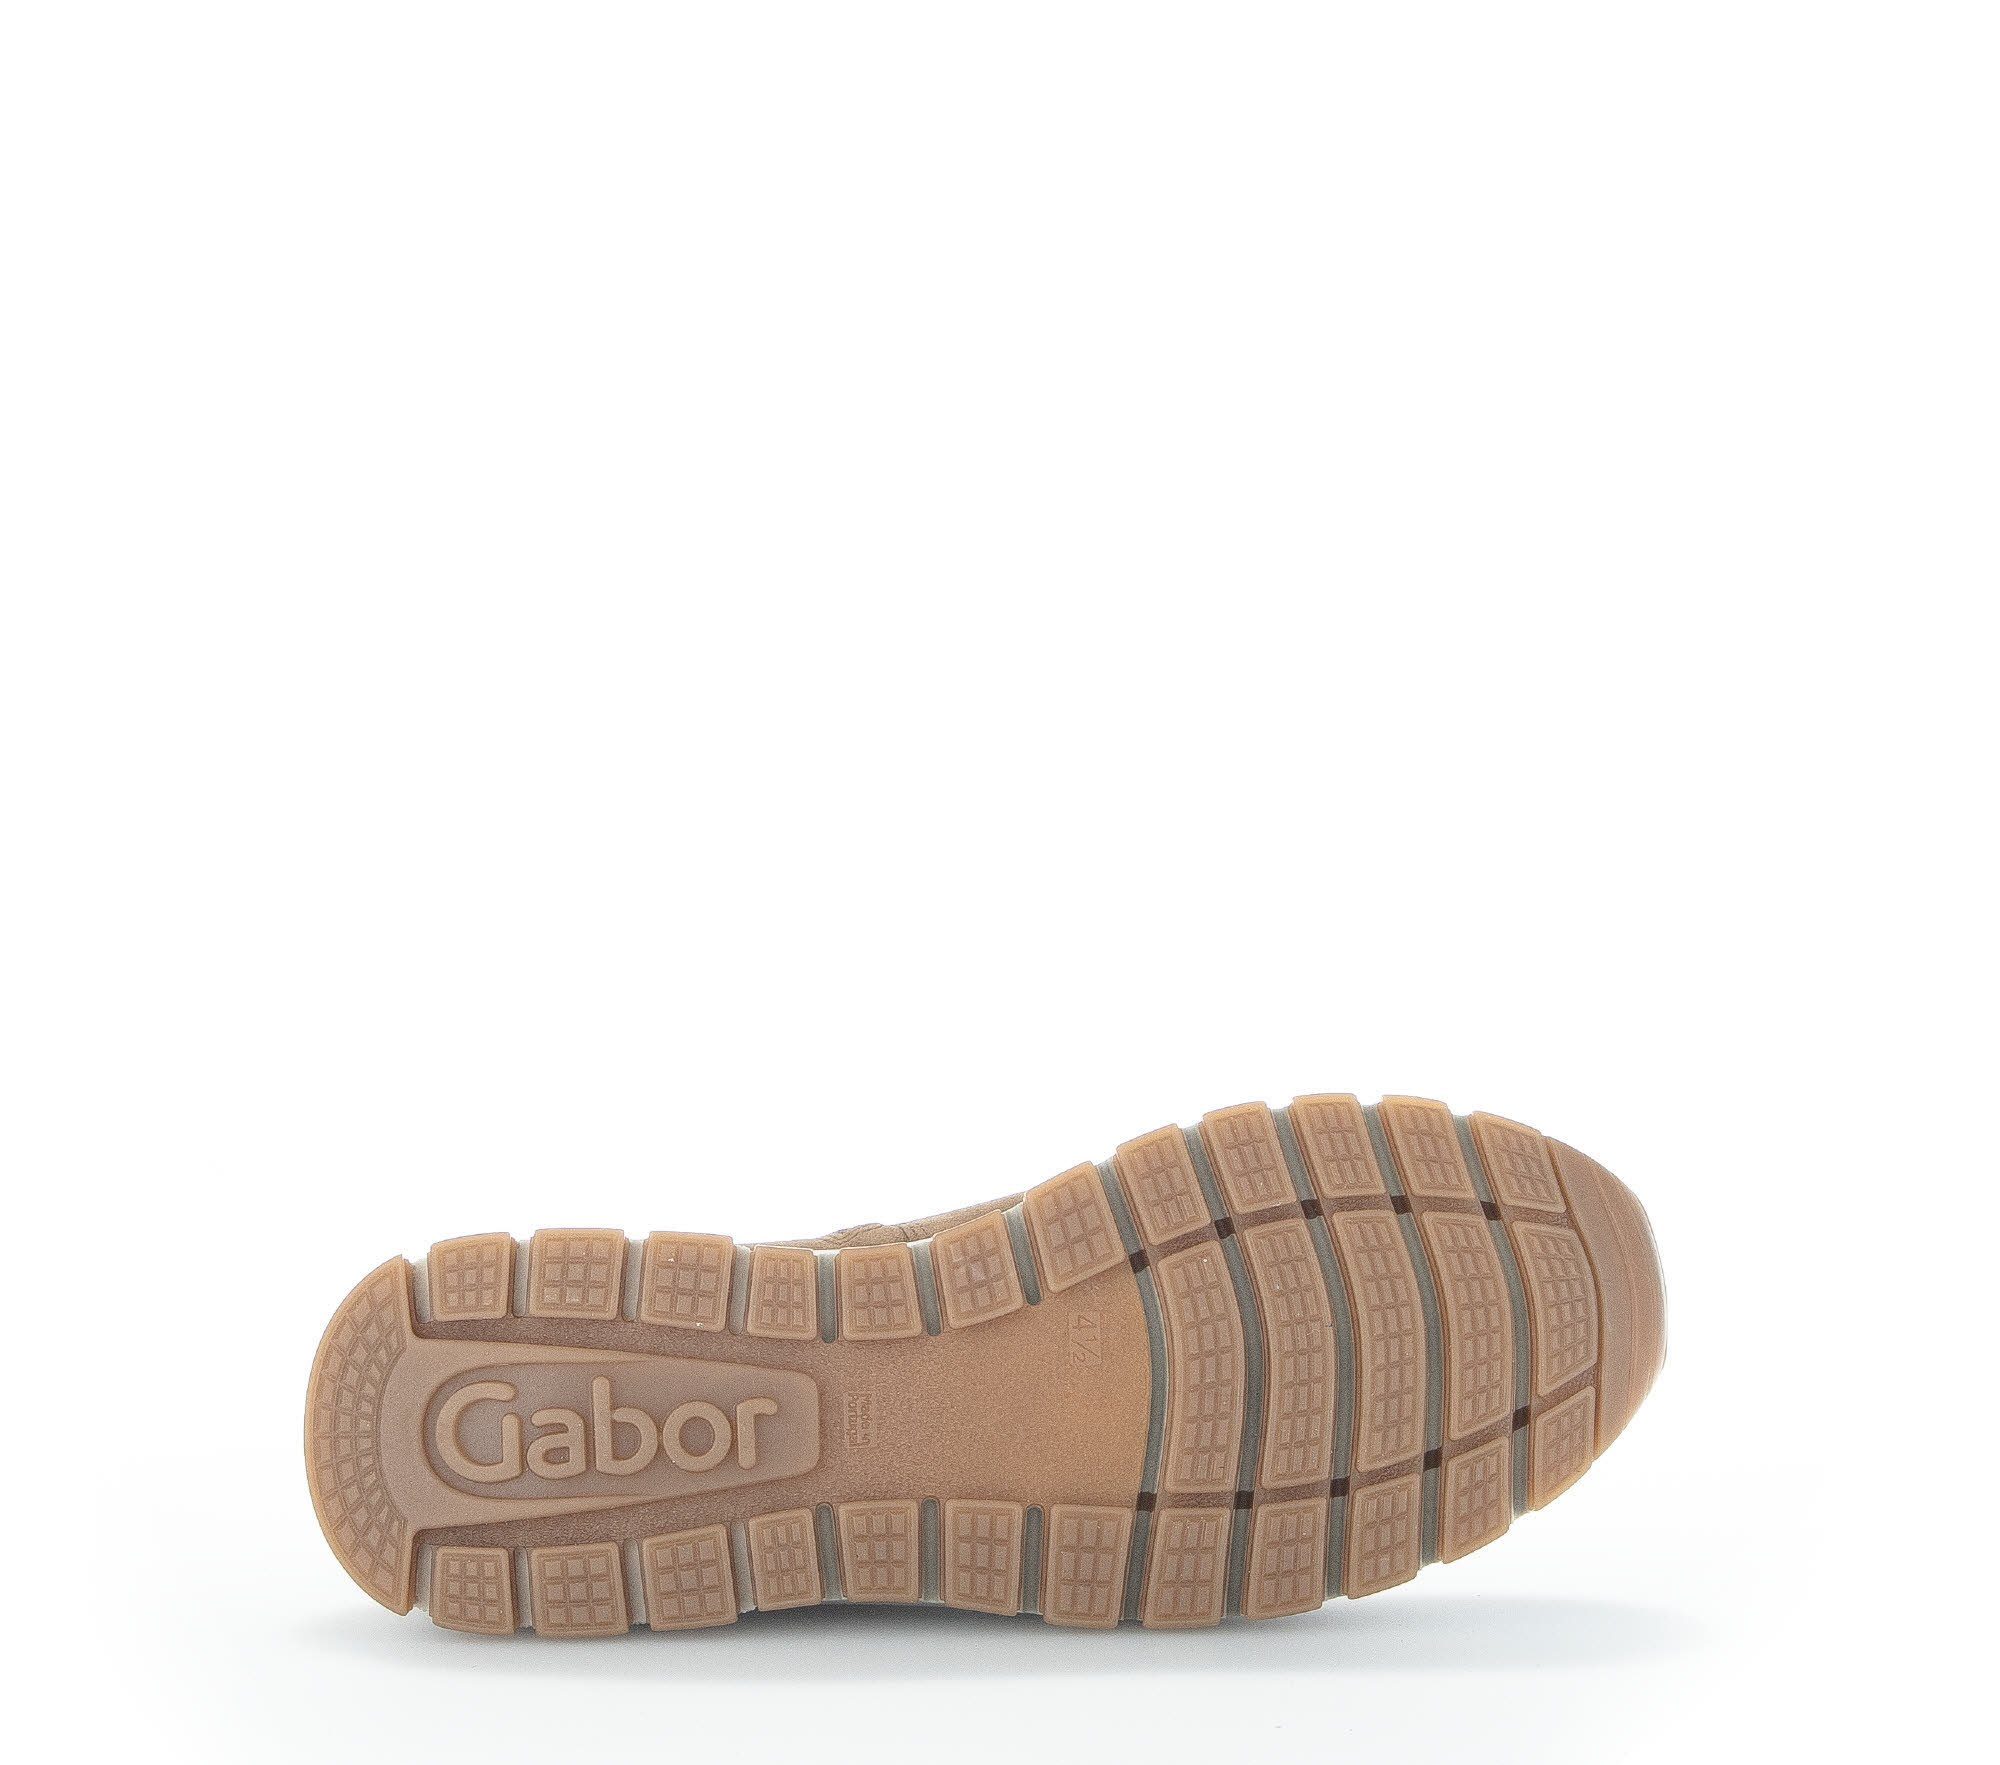 Gabor 93.550.14 (lion) Braun Chelseaboots